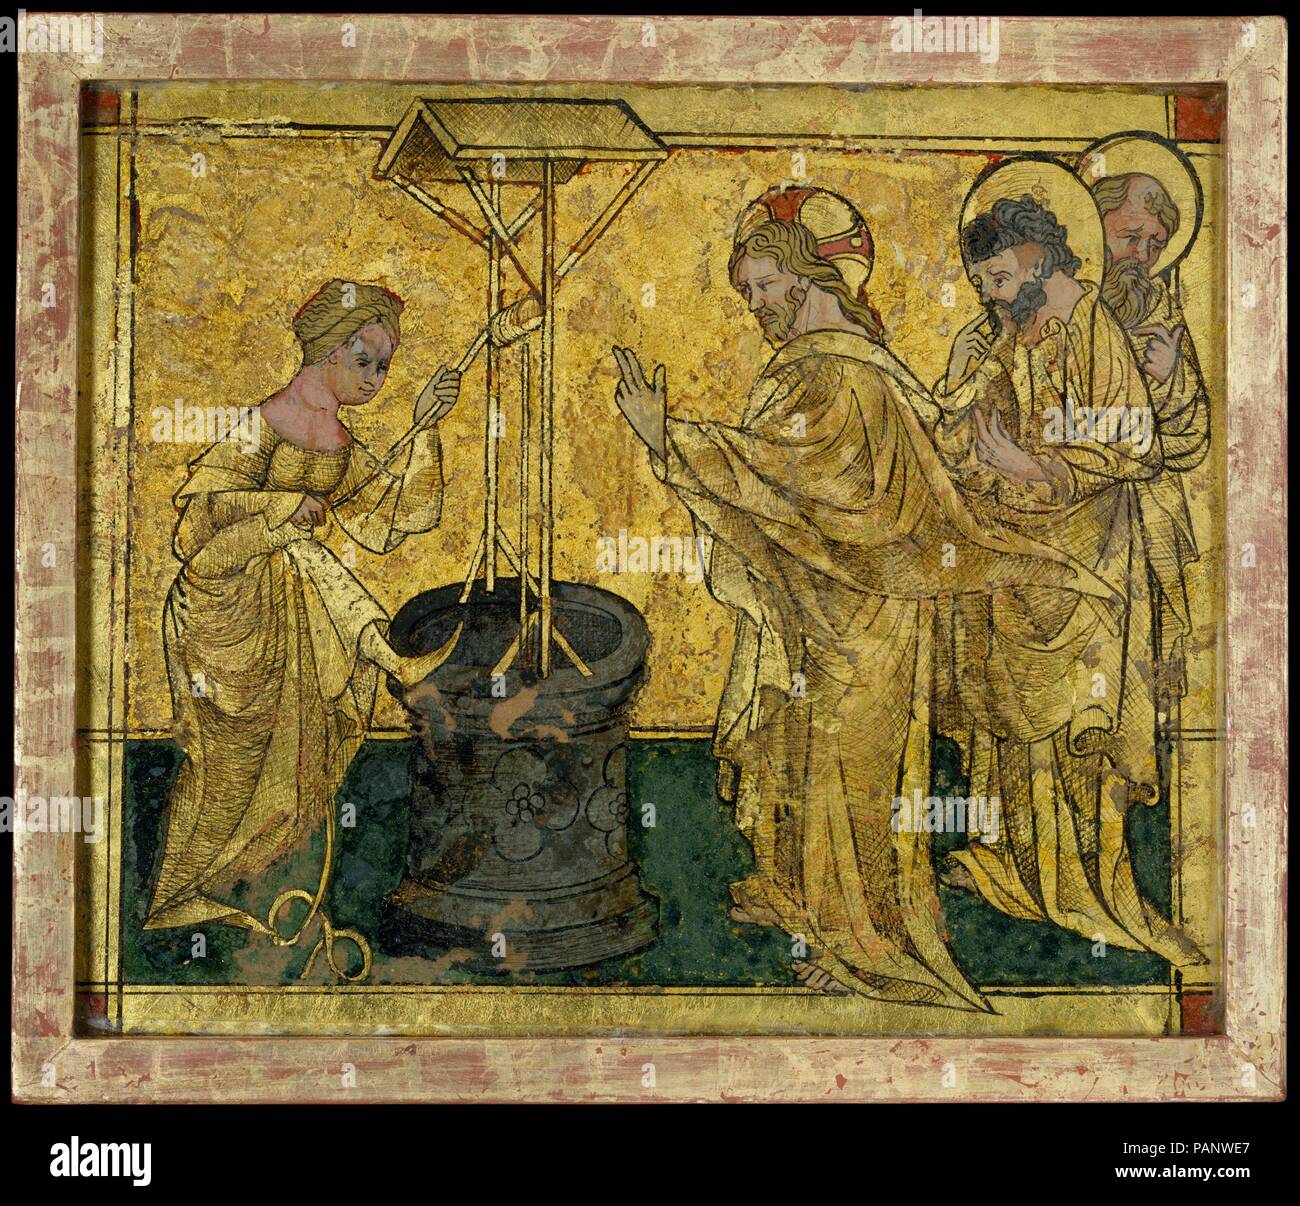 Jesus und der Samariterin am Brunnen. Kultur: Südwest deutscher (?). Abmessungen: Insgesamt (ohne Rahmen): 7 1/16 x 8 1/2 in. (18 x 21,6 cm) eingerahmt: 8 1/16 x 9 3/8 x 13/16 in. (20,5 x 23,8 x 2 cm). Datum: Ca. 1420. Dieser frühen Beispiel von Reverse Glasmalerei kann einen wurden eine Reihe mit Szenen aus dem Leben Jesu. Das Thema ist ein selten dargestellte Episode aus dem Evangelium des Johannes, in der Jesus spricht mit der Frau aus Samaria. Die Begegnung war unerwartet, da, wie der hl. Johannes sagte: "Juden nicht mit den Samaritern zu verknüpfen." Als Ergebnis ihrer Gespräche, die Frau c wurde Stockfoto